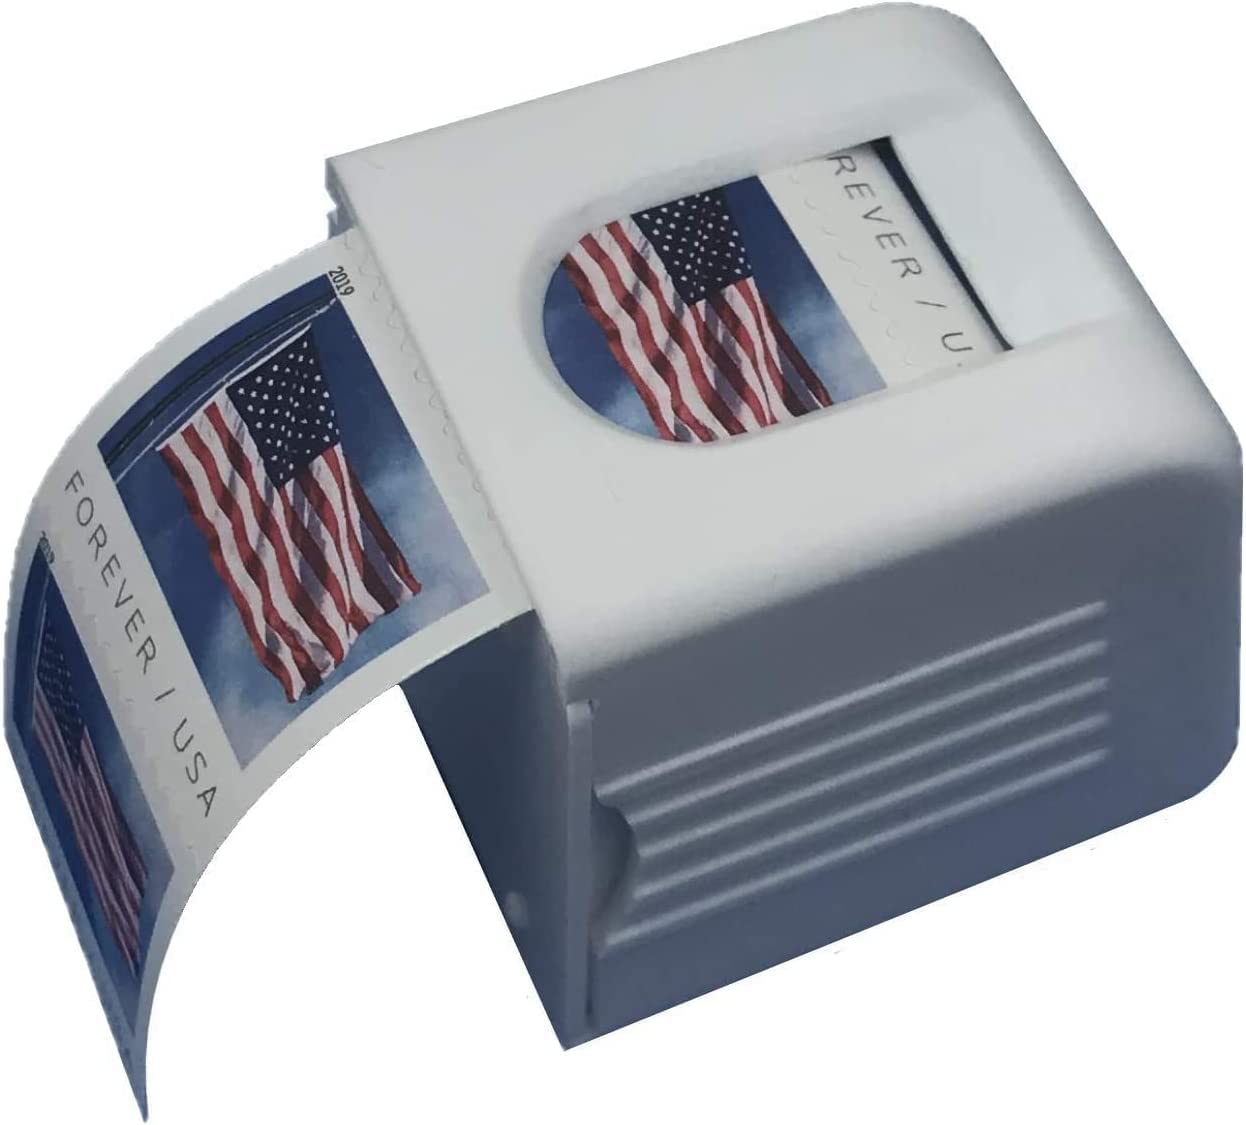 meperper Stamp Holder Dispenser - Stamp Roll Holder - Postage Stamp Dispenser - Stamp Holder for Roll of Stamps - Roll Stamp Dispenser - 